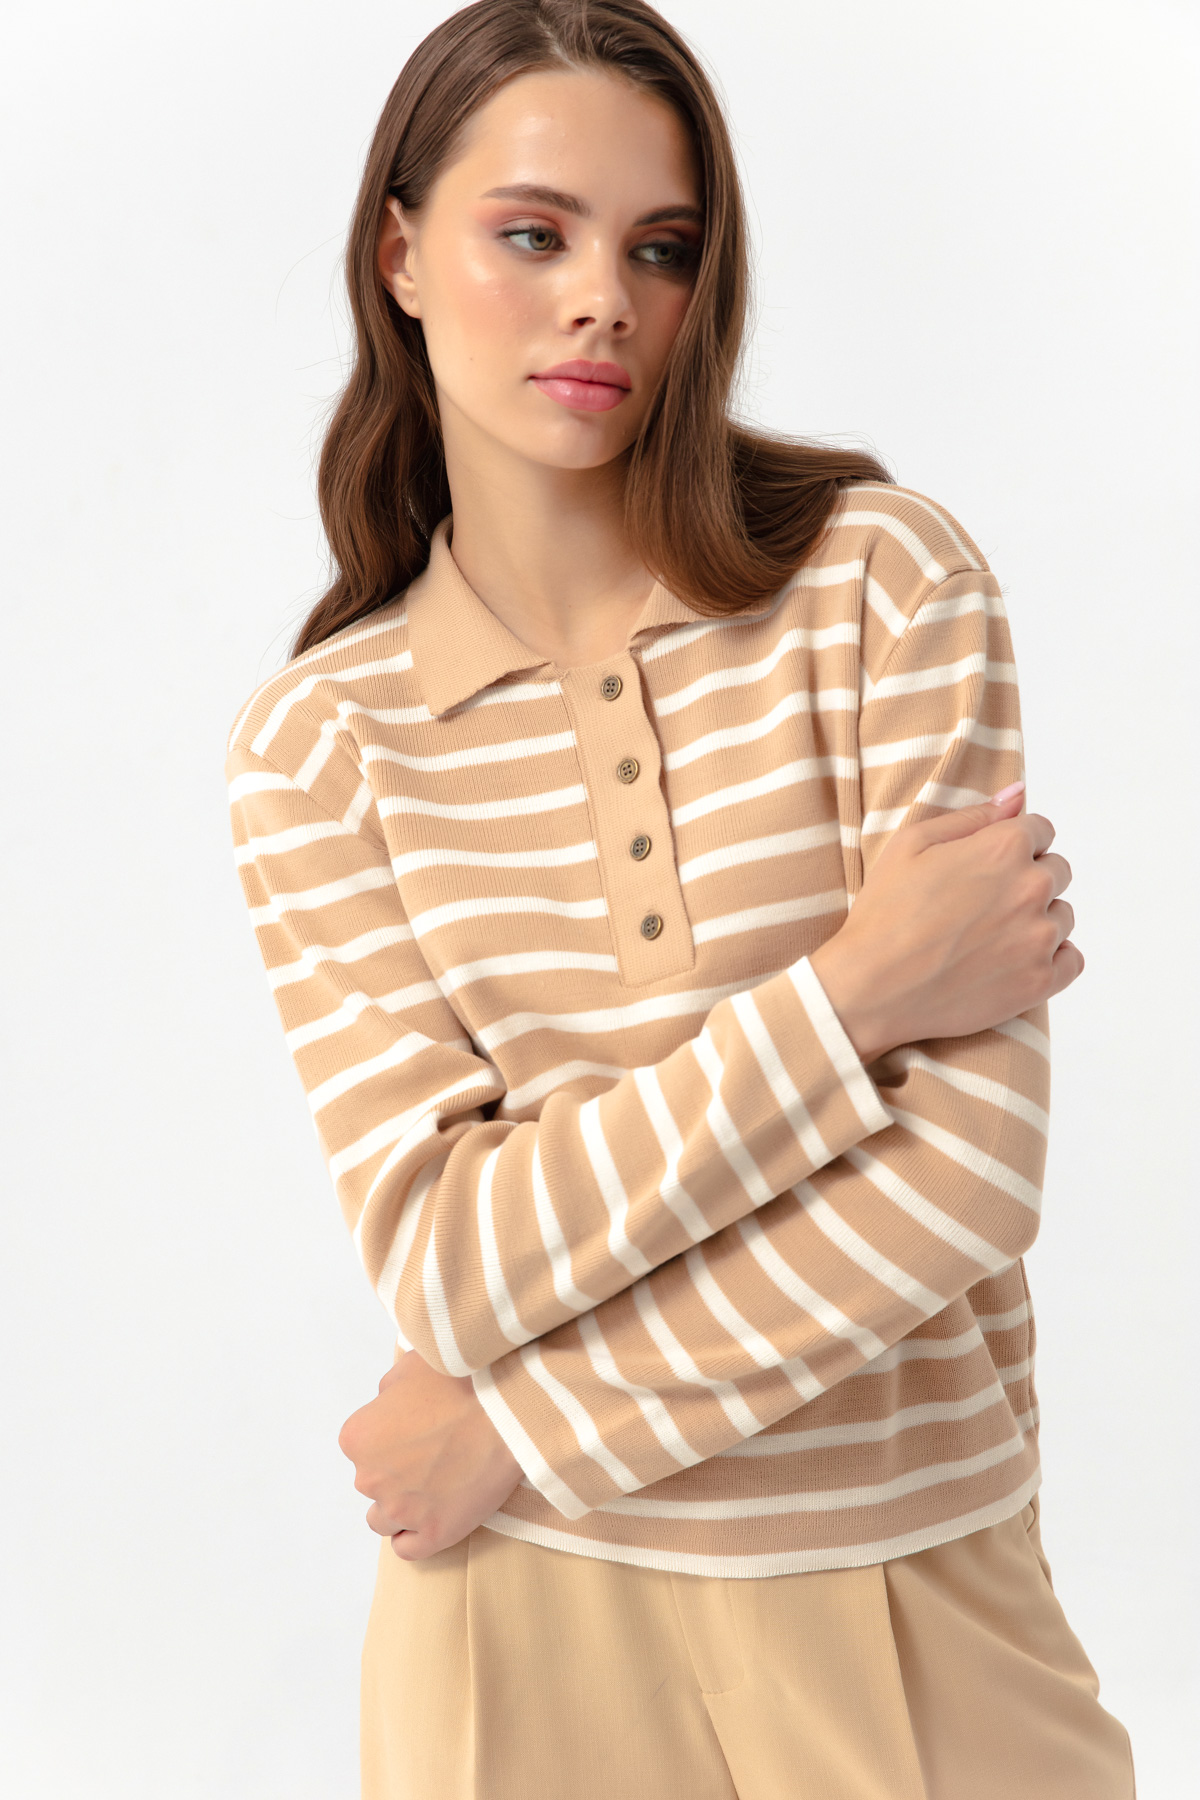 Women's Mink Striped Knitwear Sweater